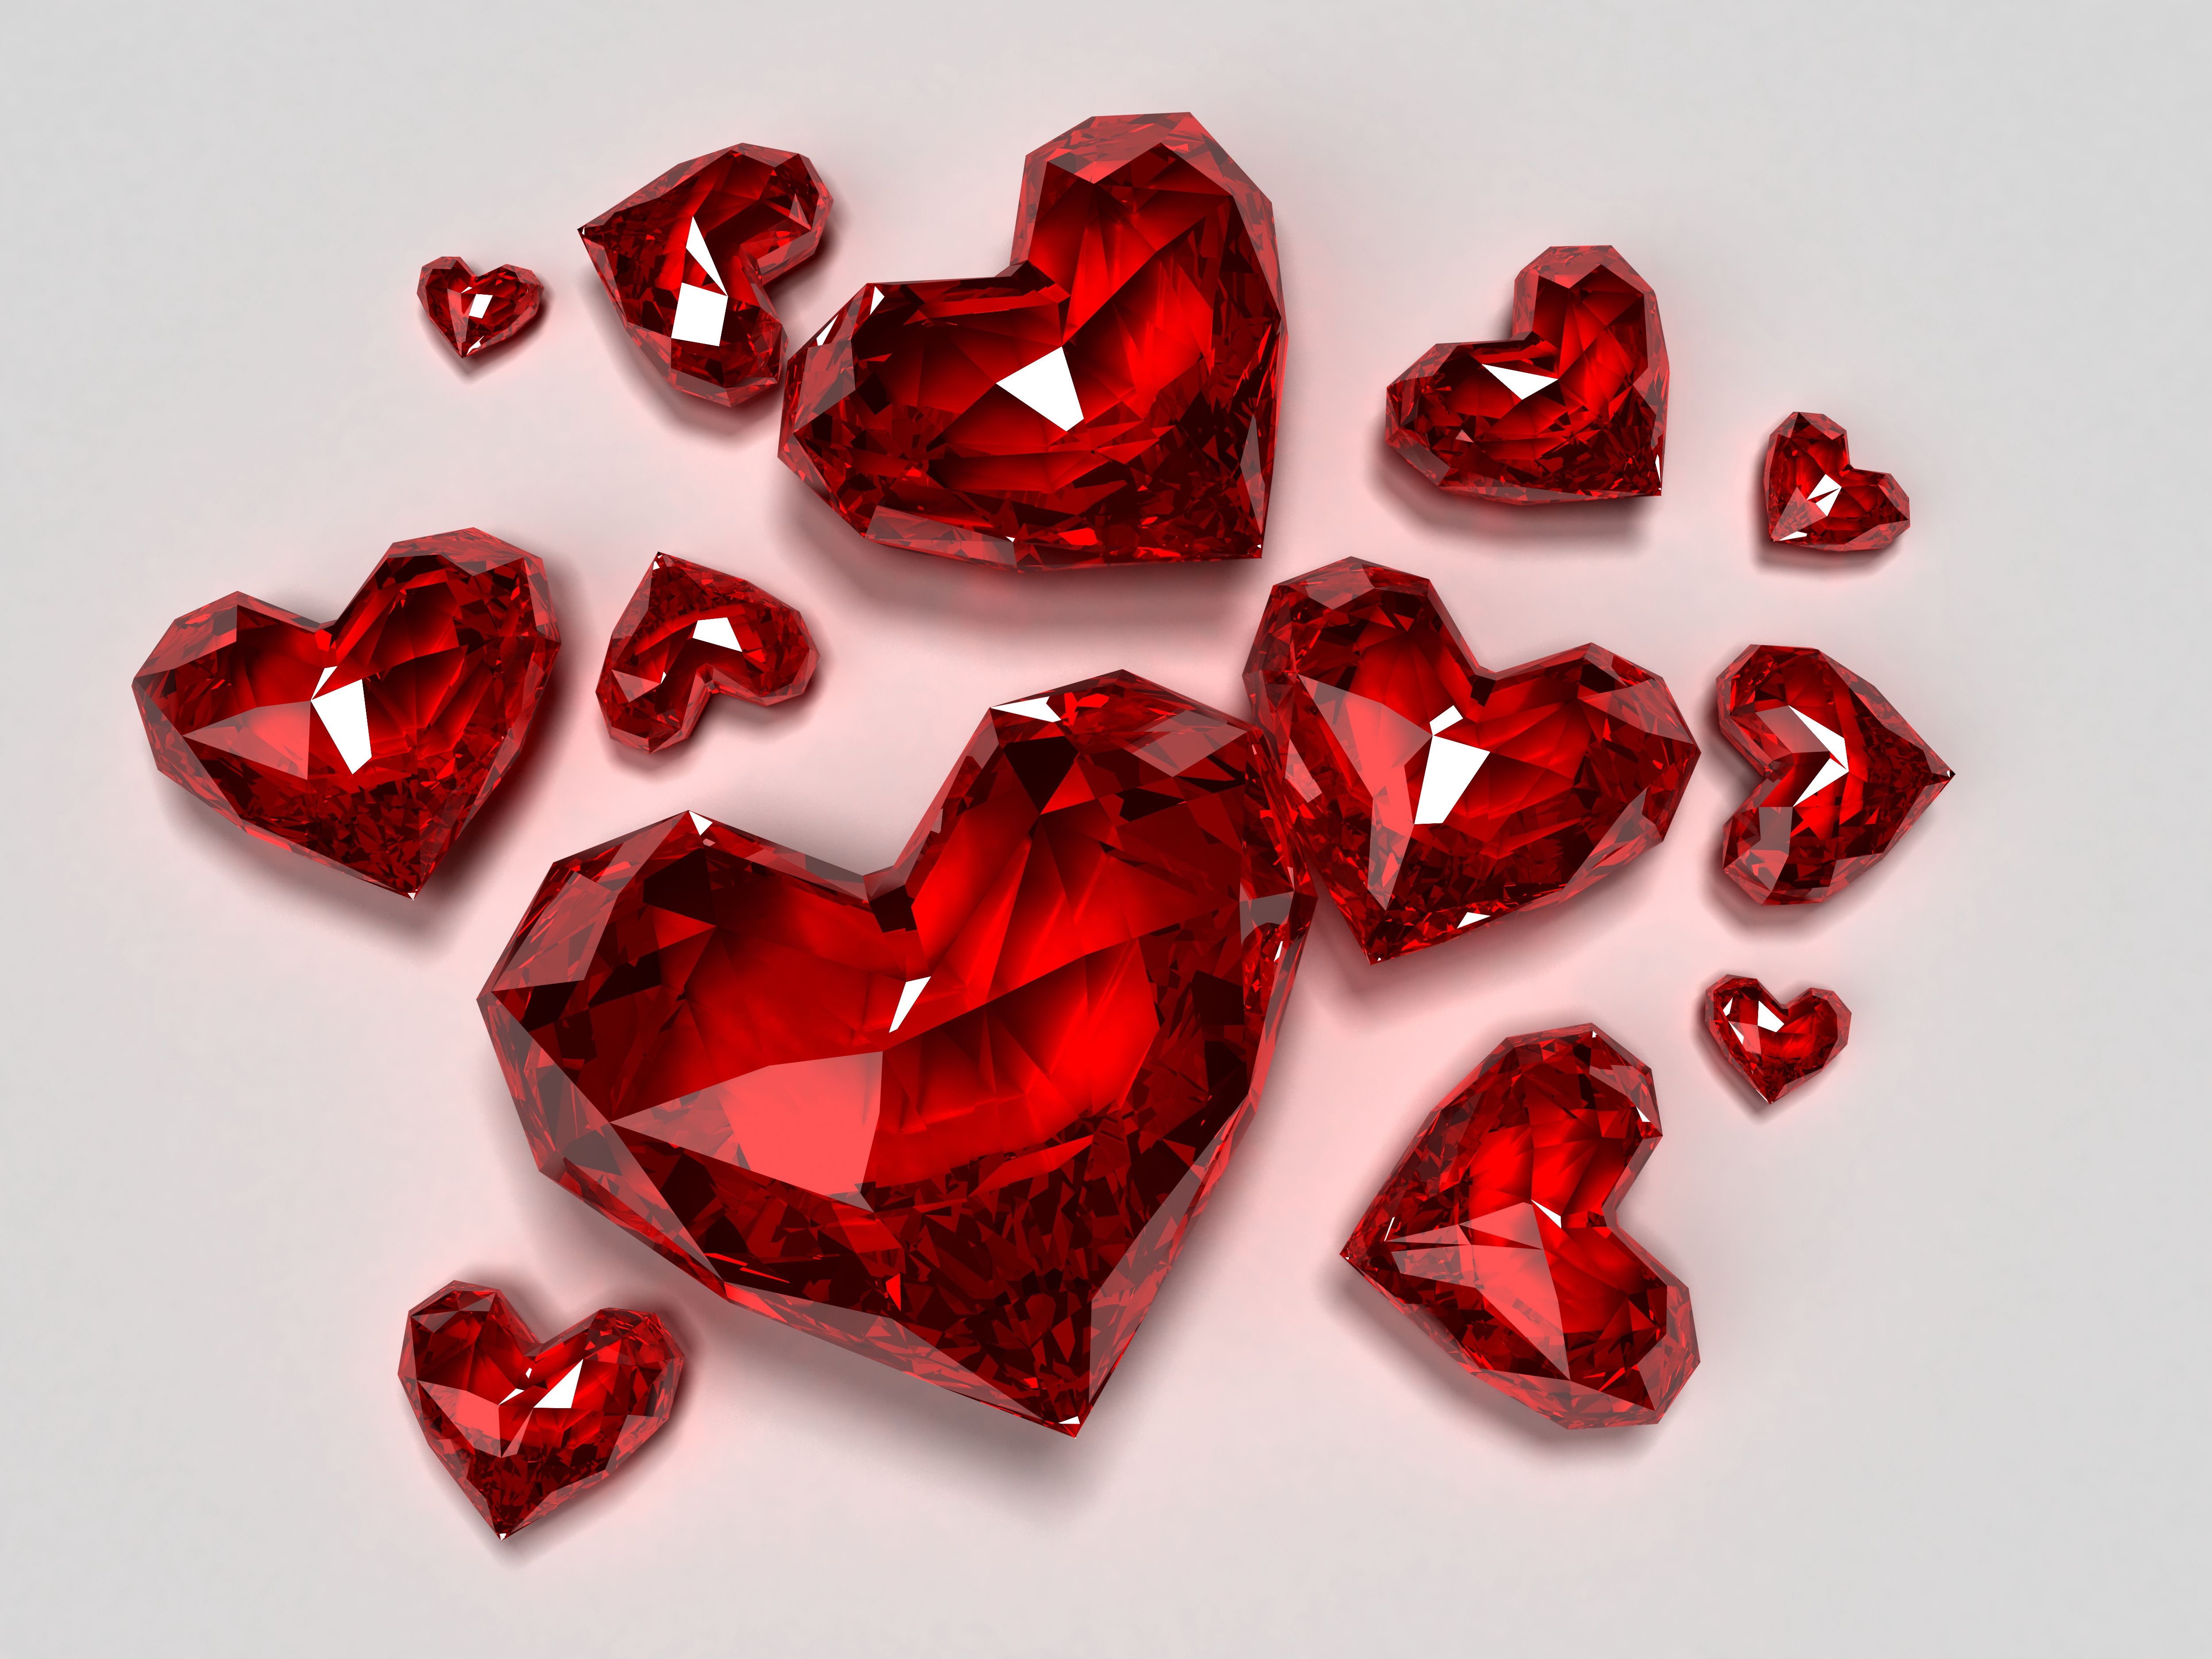  Diamant Hintergrundbild 5000x3750. Kostenlose Hintergrundbilder Herzen, Diamond, Roter Diamant, Valentines Tag, Rubin, Bilder Für Ihren Desktop Und Fotos